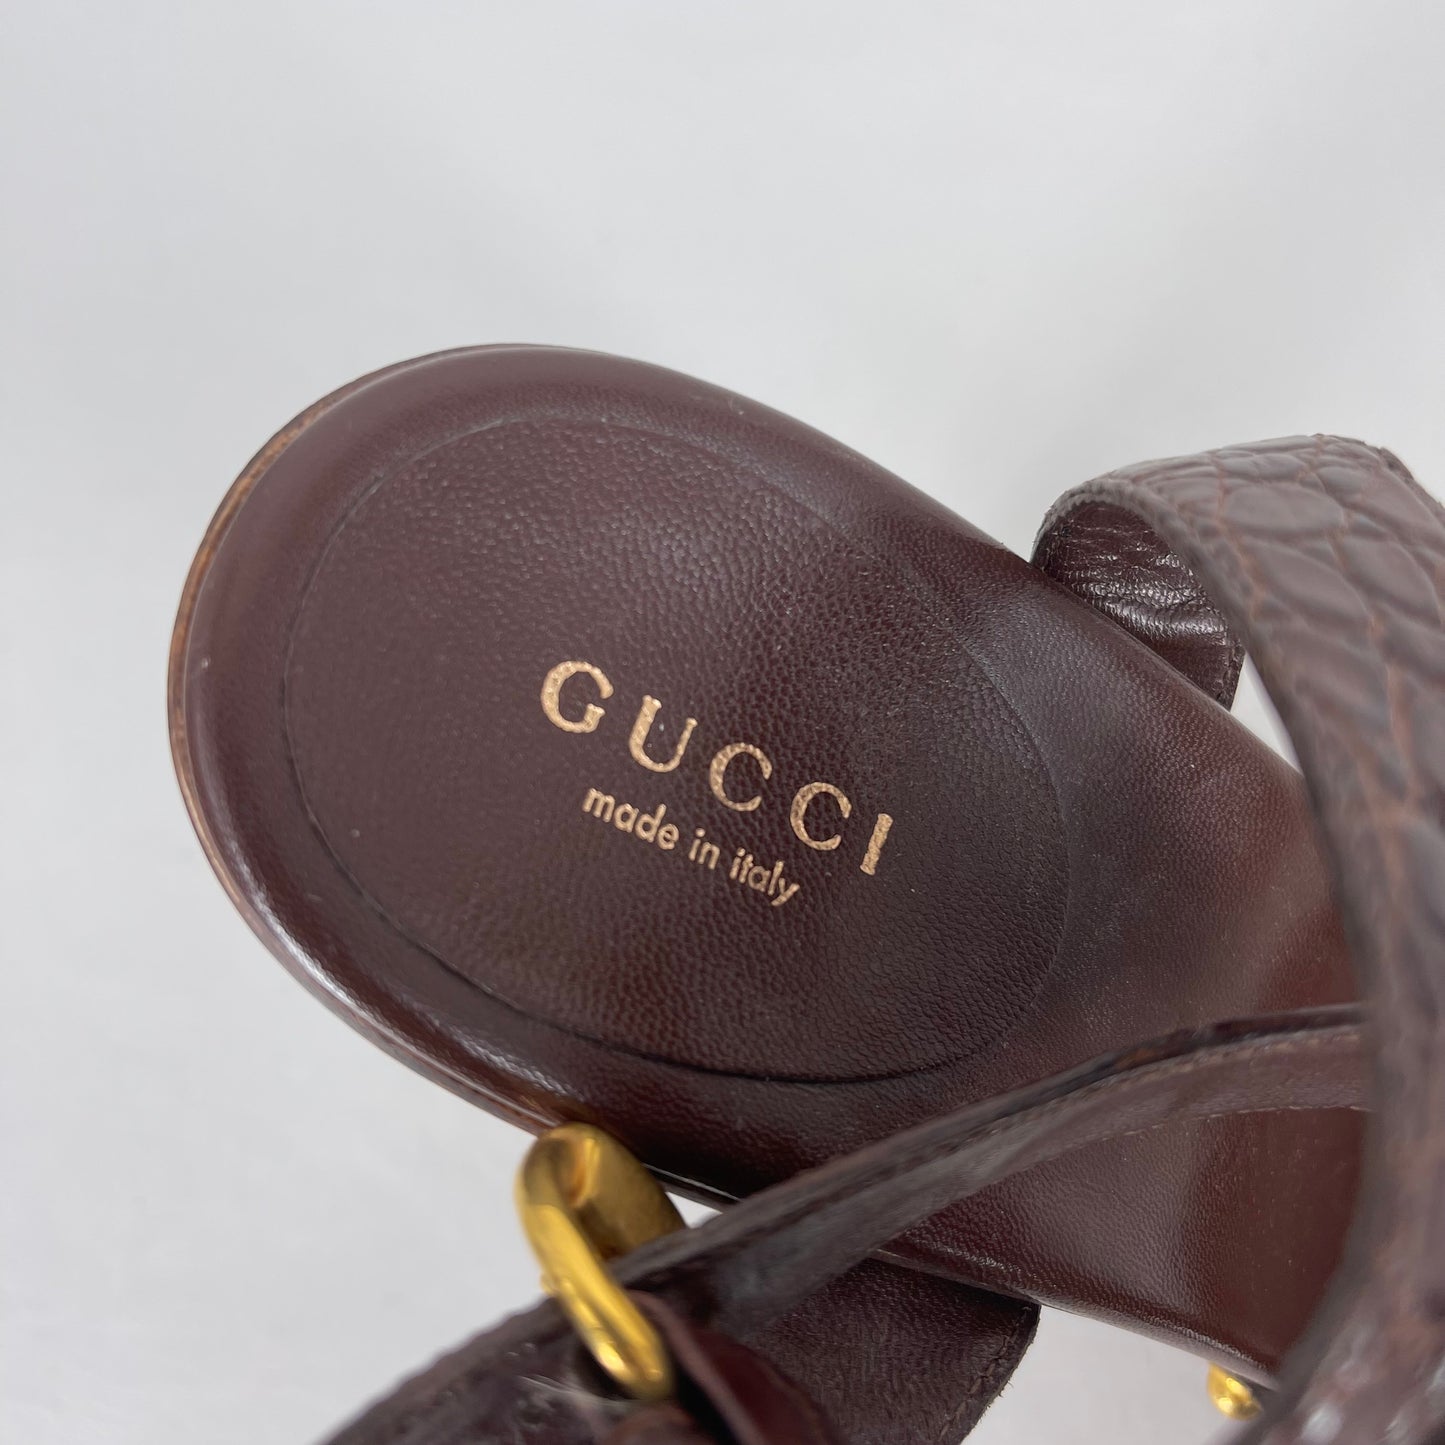 Authentic Gucci Brown Croc Wood Clog Heels Sz 8.5